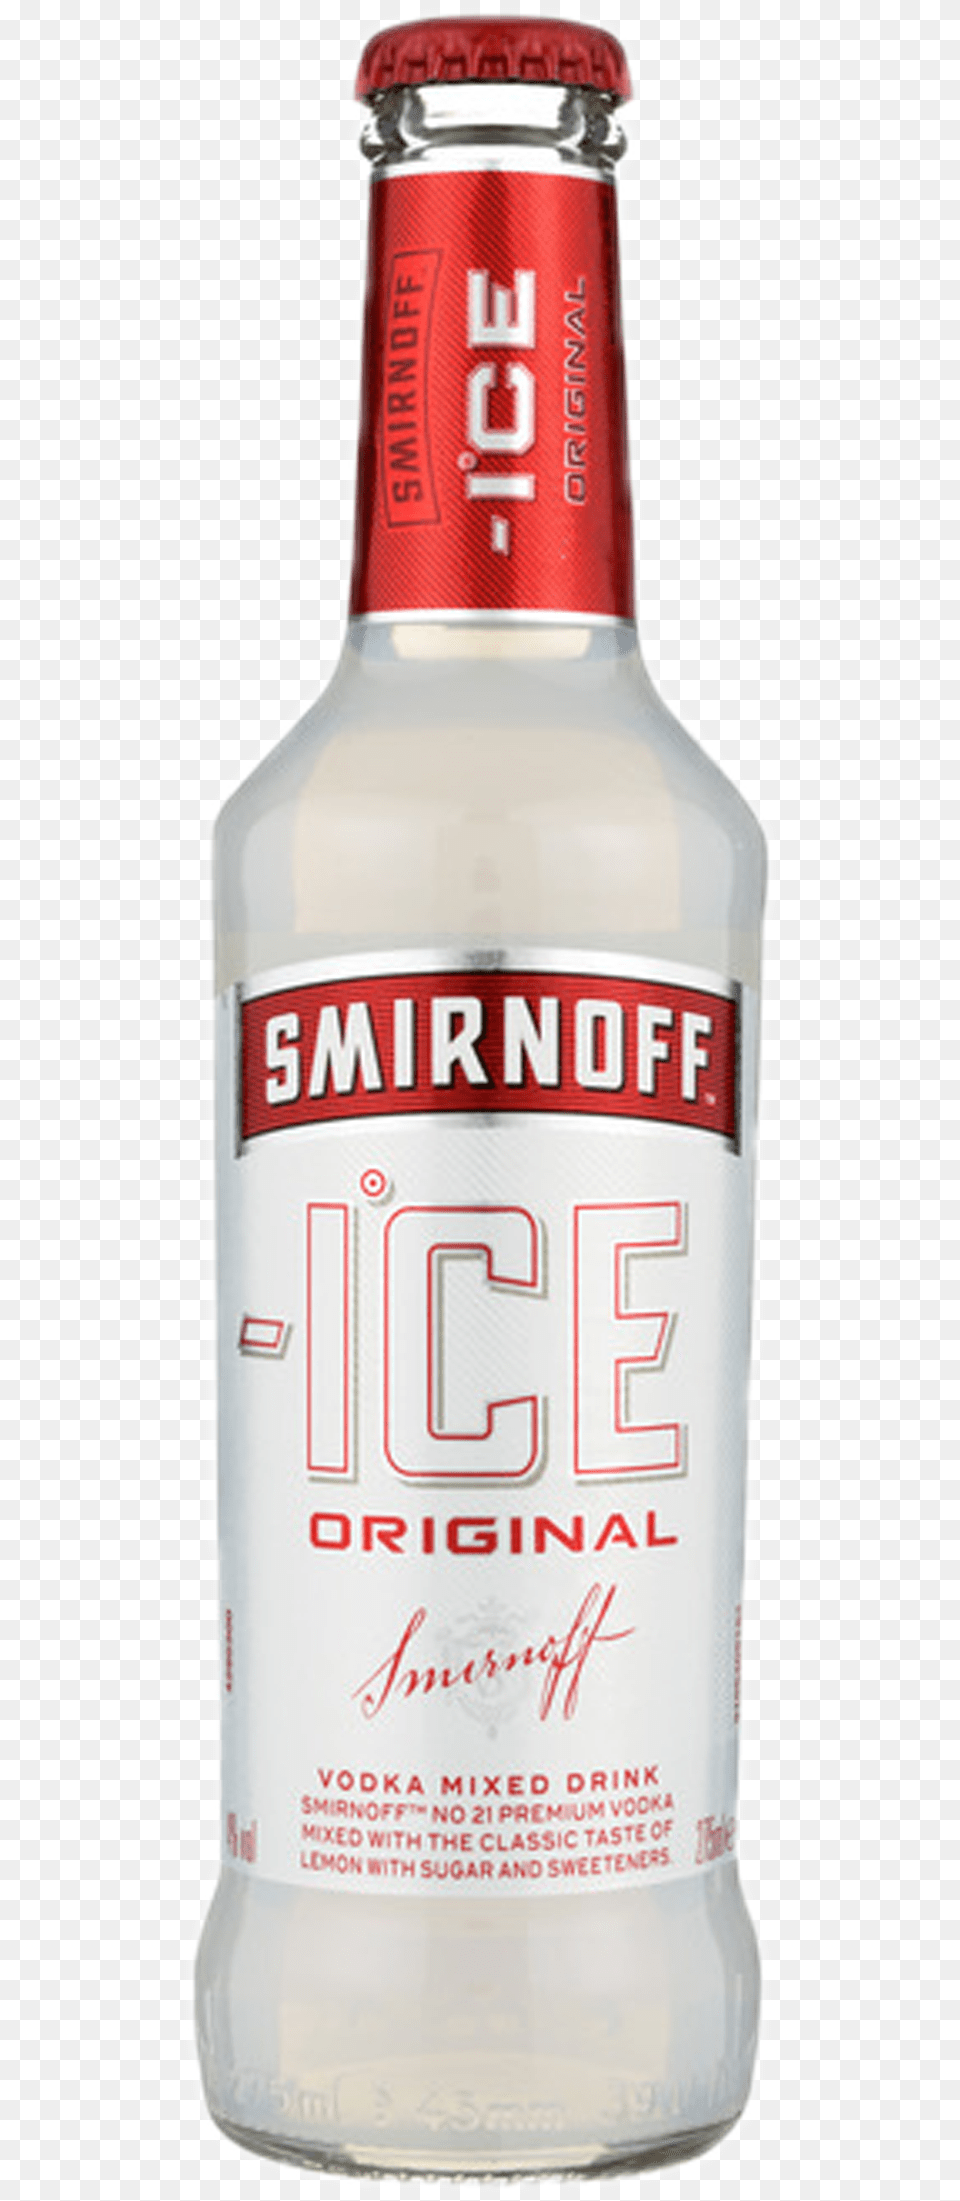 Smirnoff Ice Glass Bottle, Alcohol, Beer, Beverage, Beer Bottle Png Image